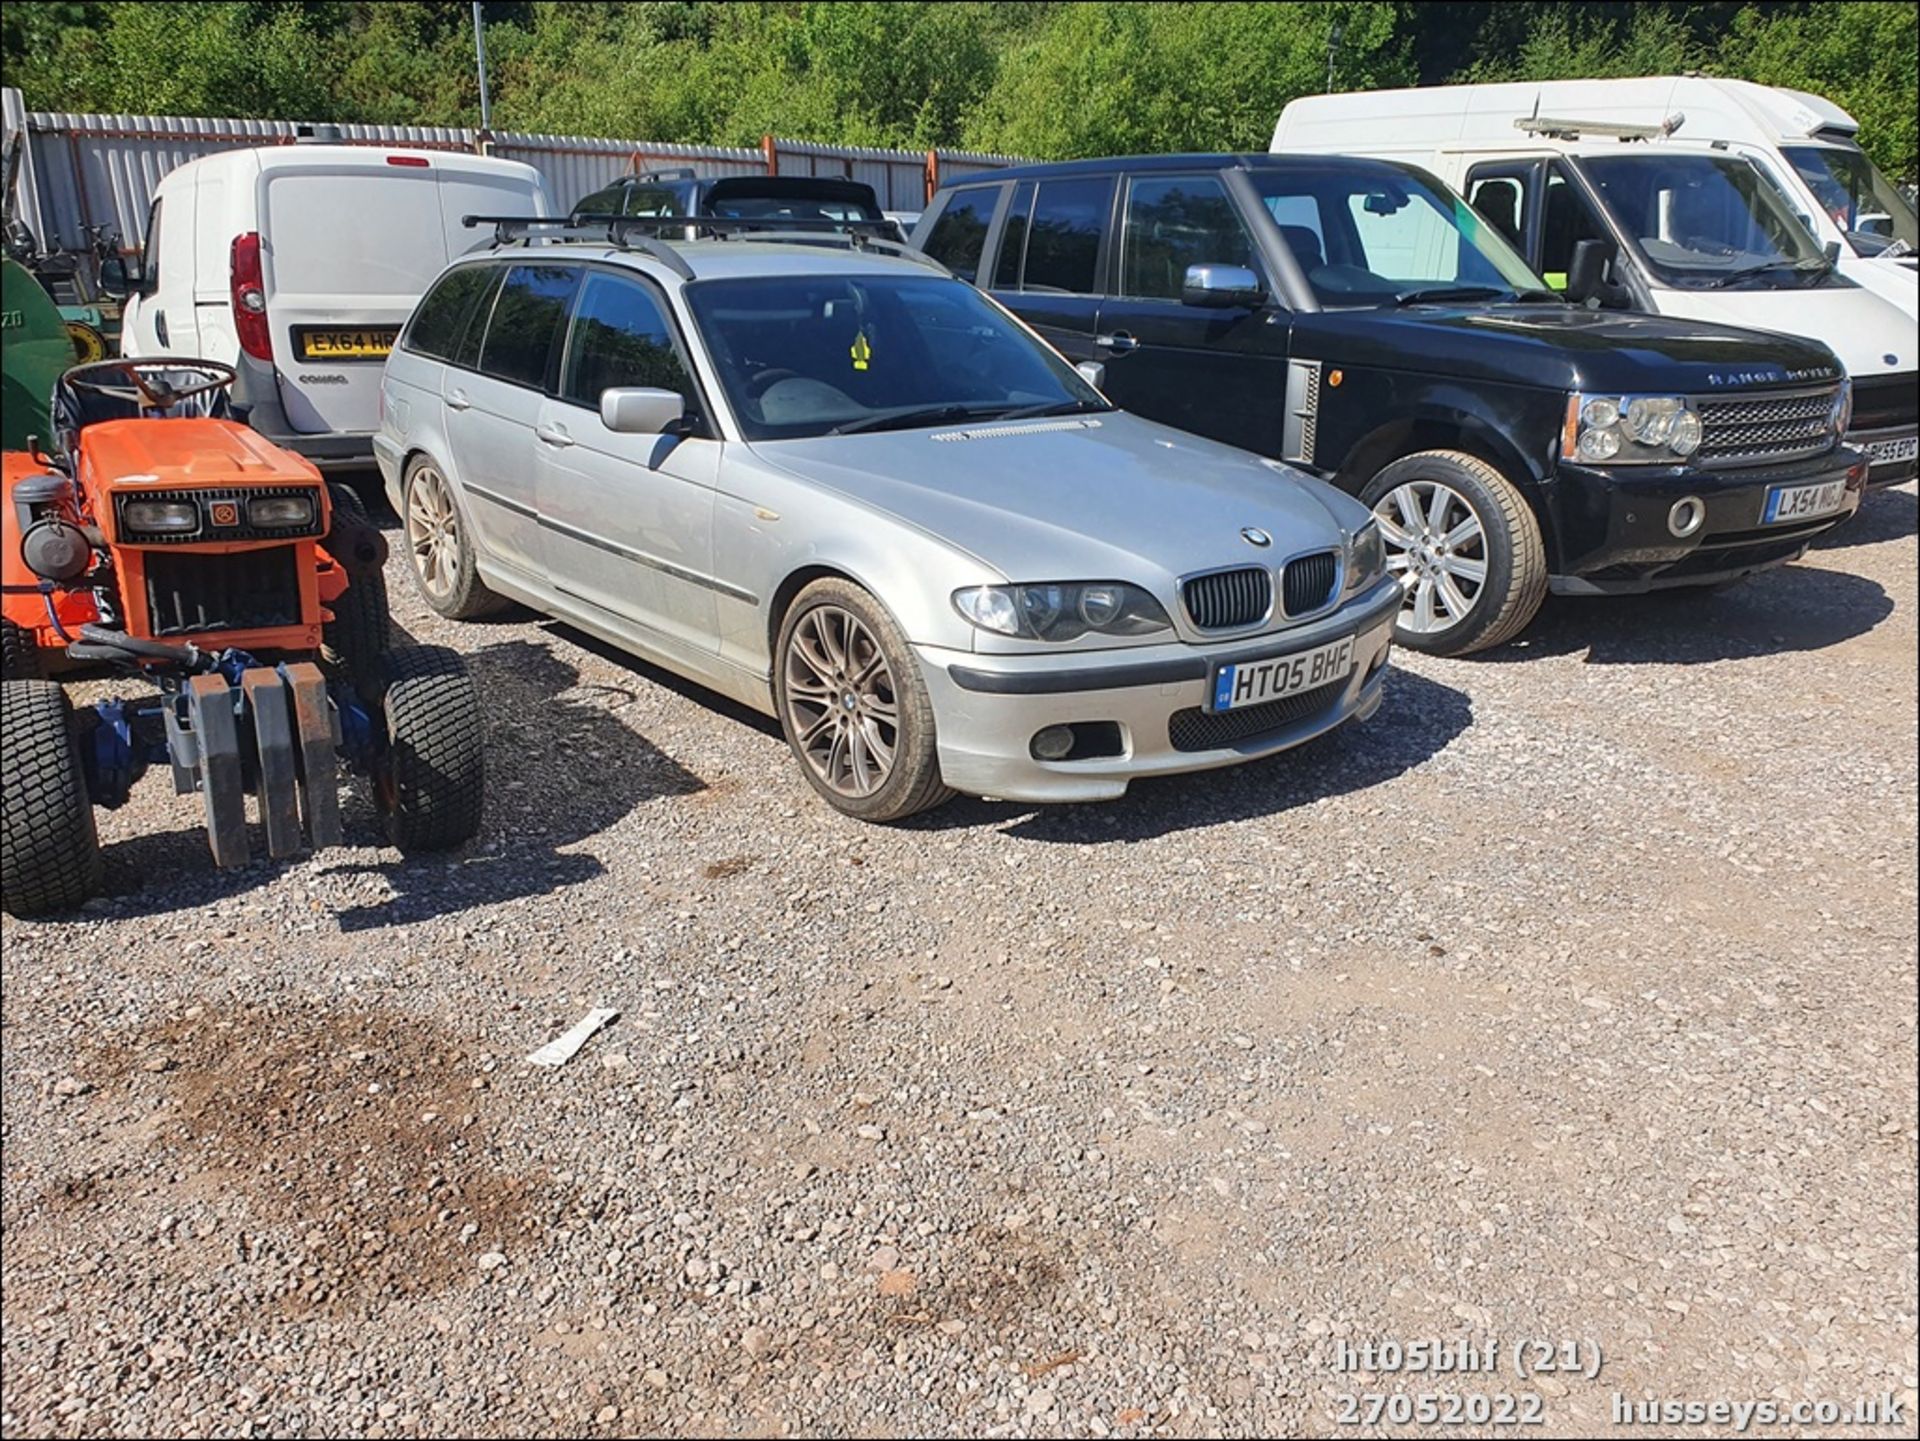 05/05 BMW 320D SPORT AUTO - 1995cc 5dr Estate (Silver, 174k) - Image 21 of 21